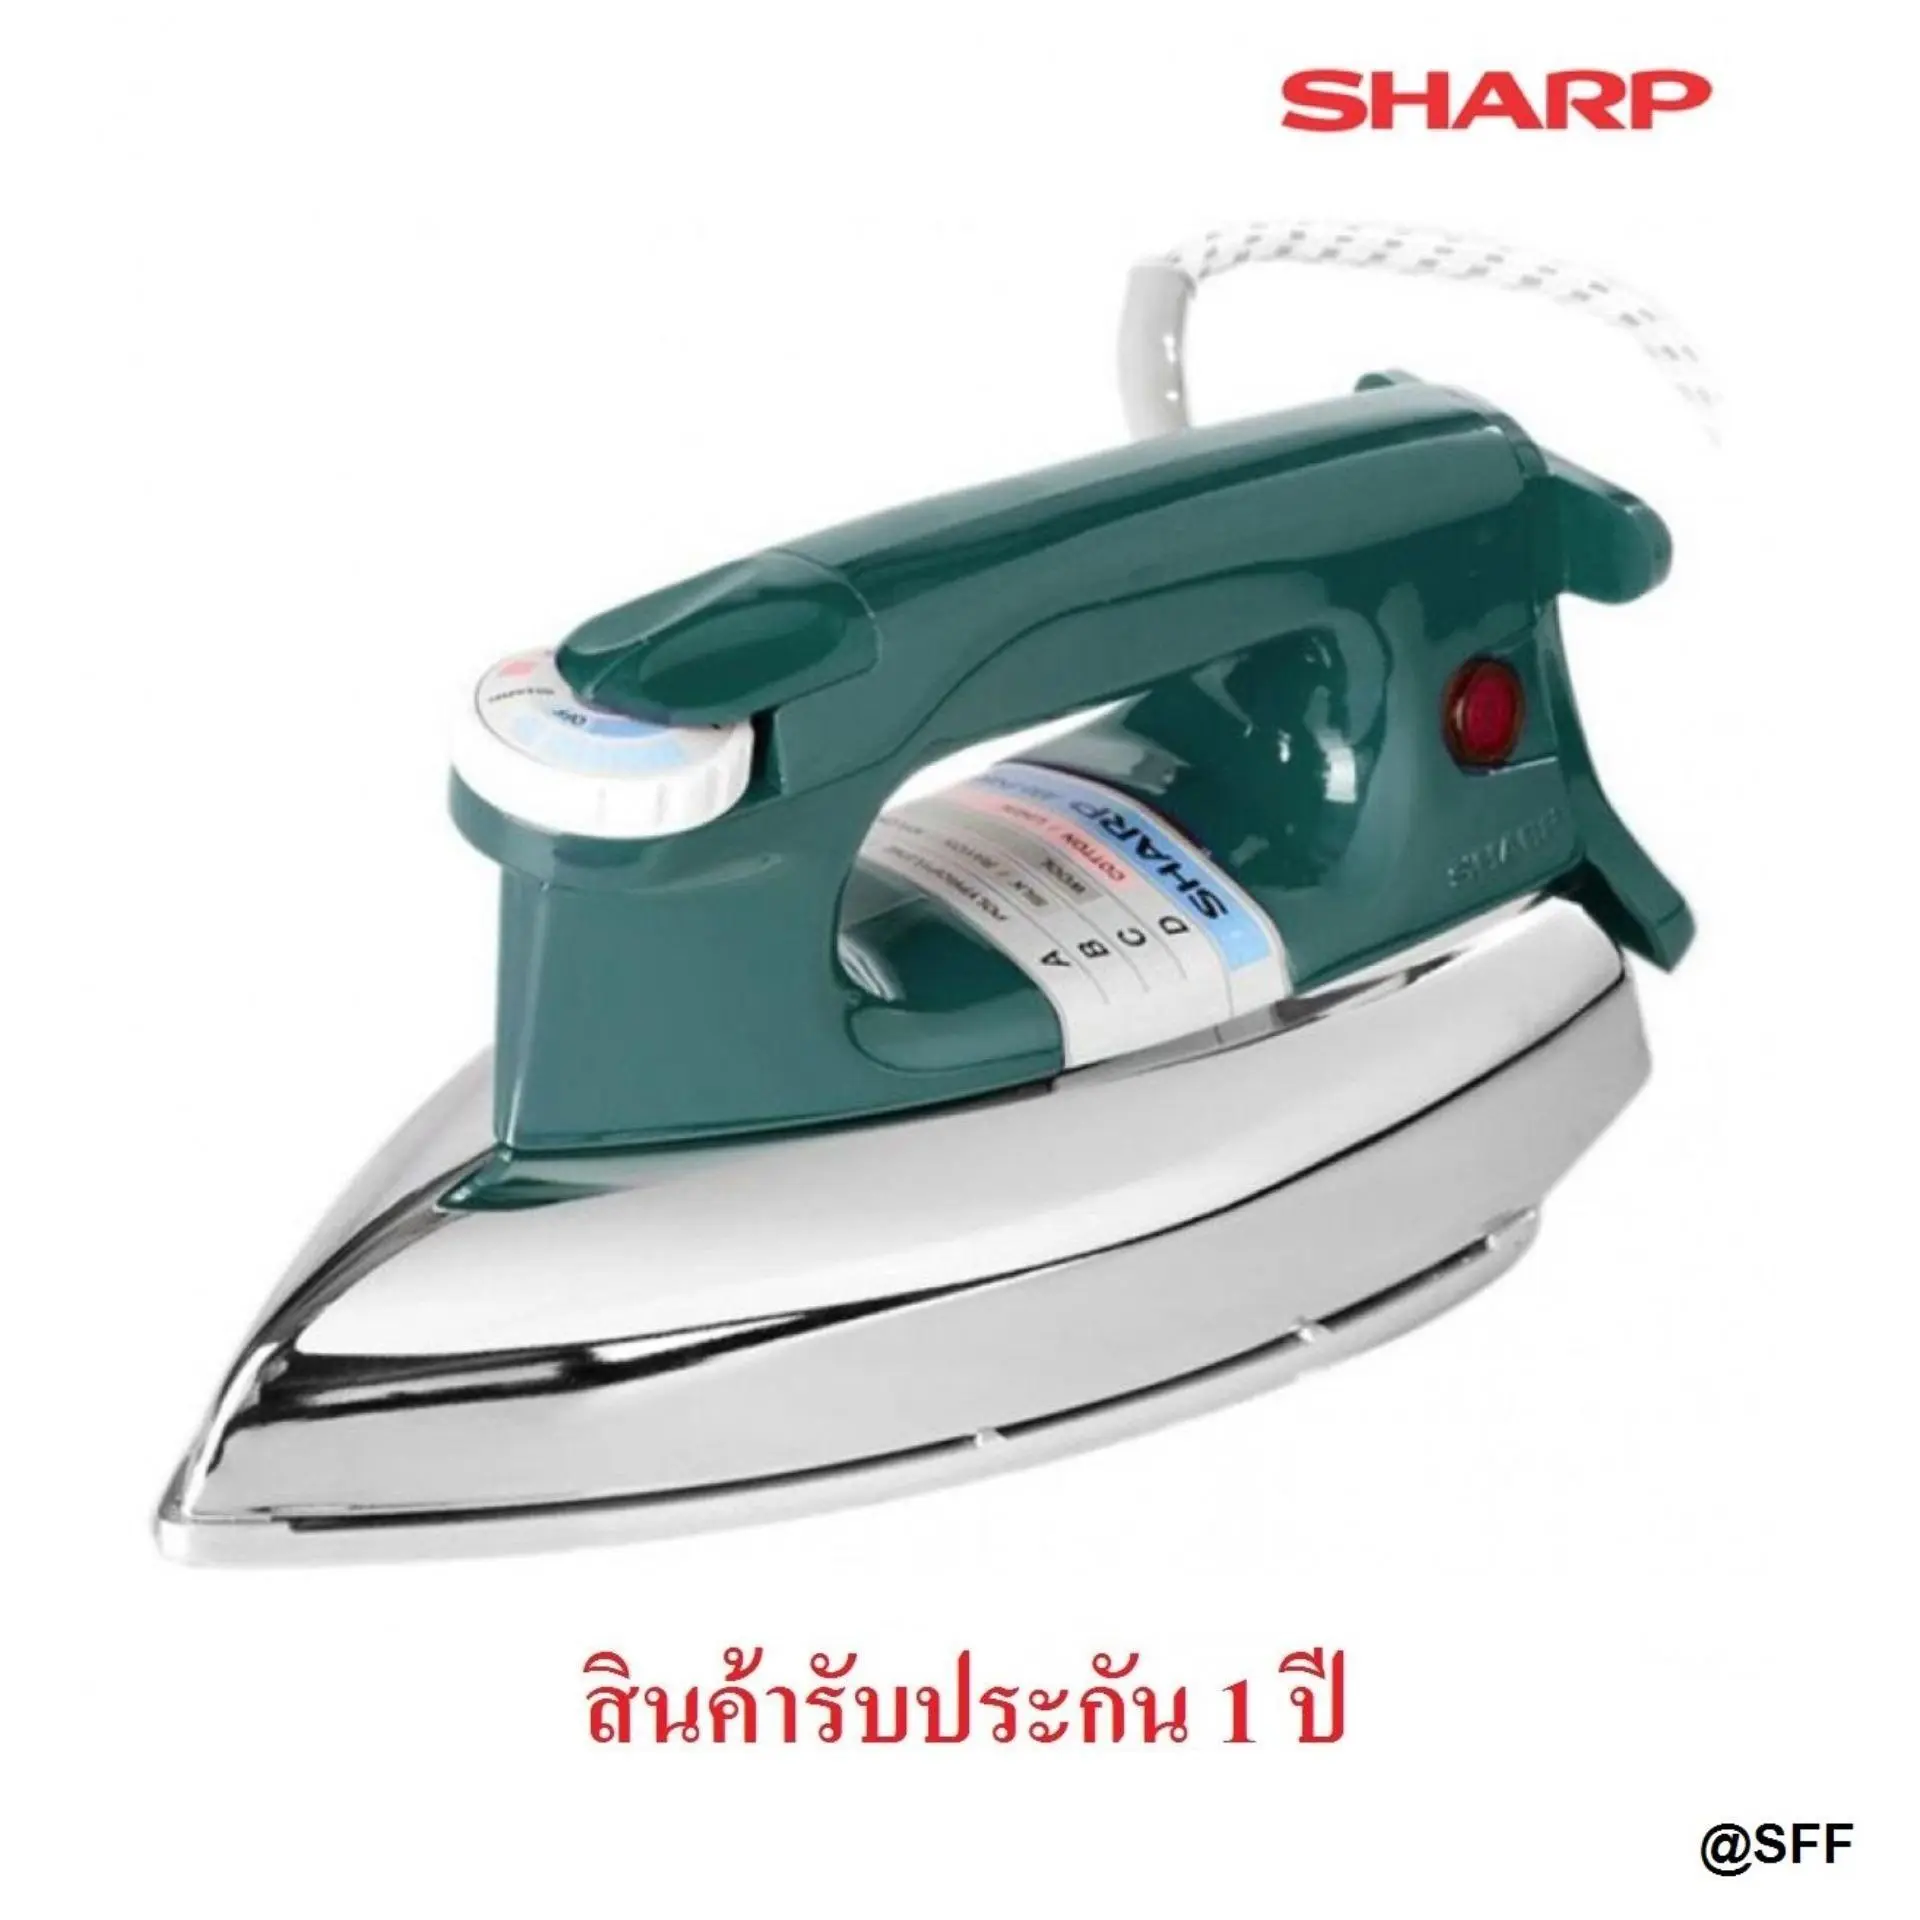 SHARP เตารีด 3.5ปอนด์ รุ่น AM-455 ++คละสี++